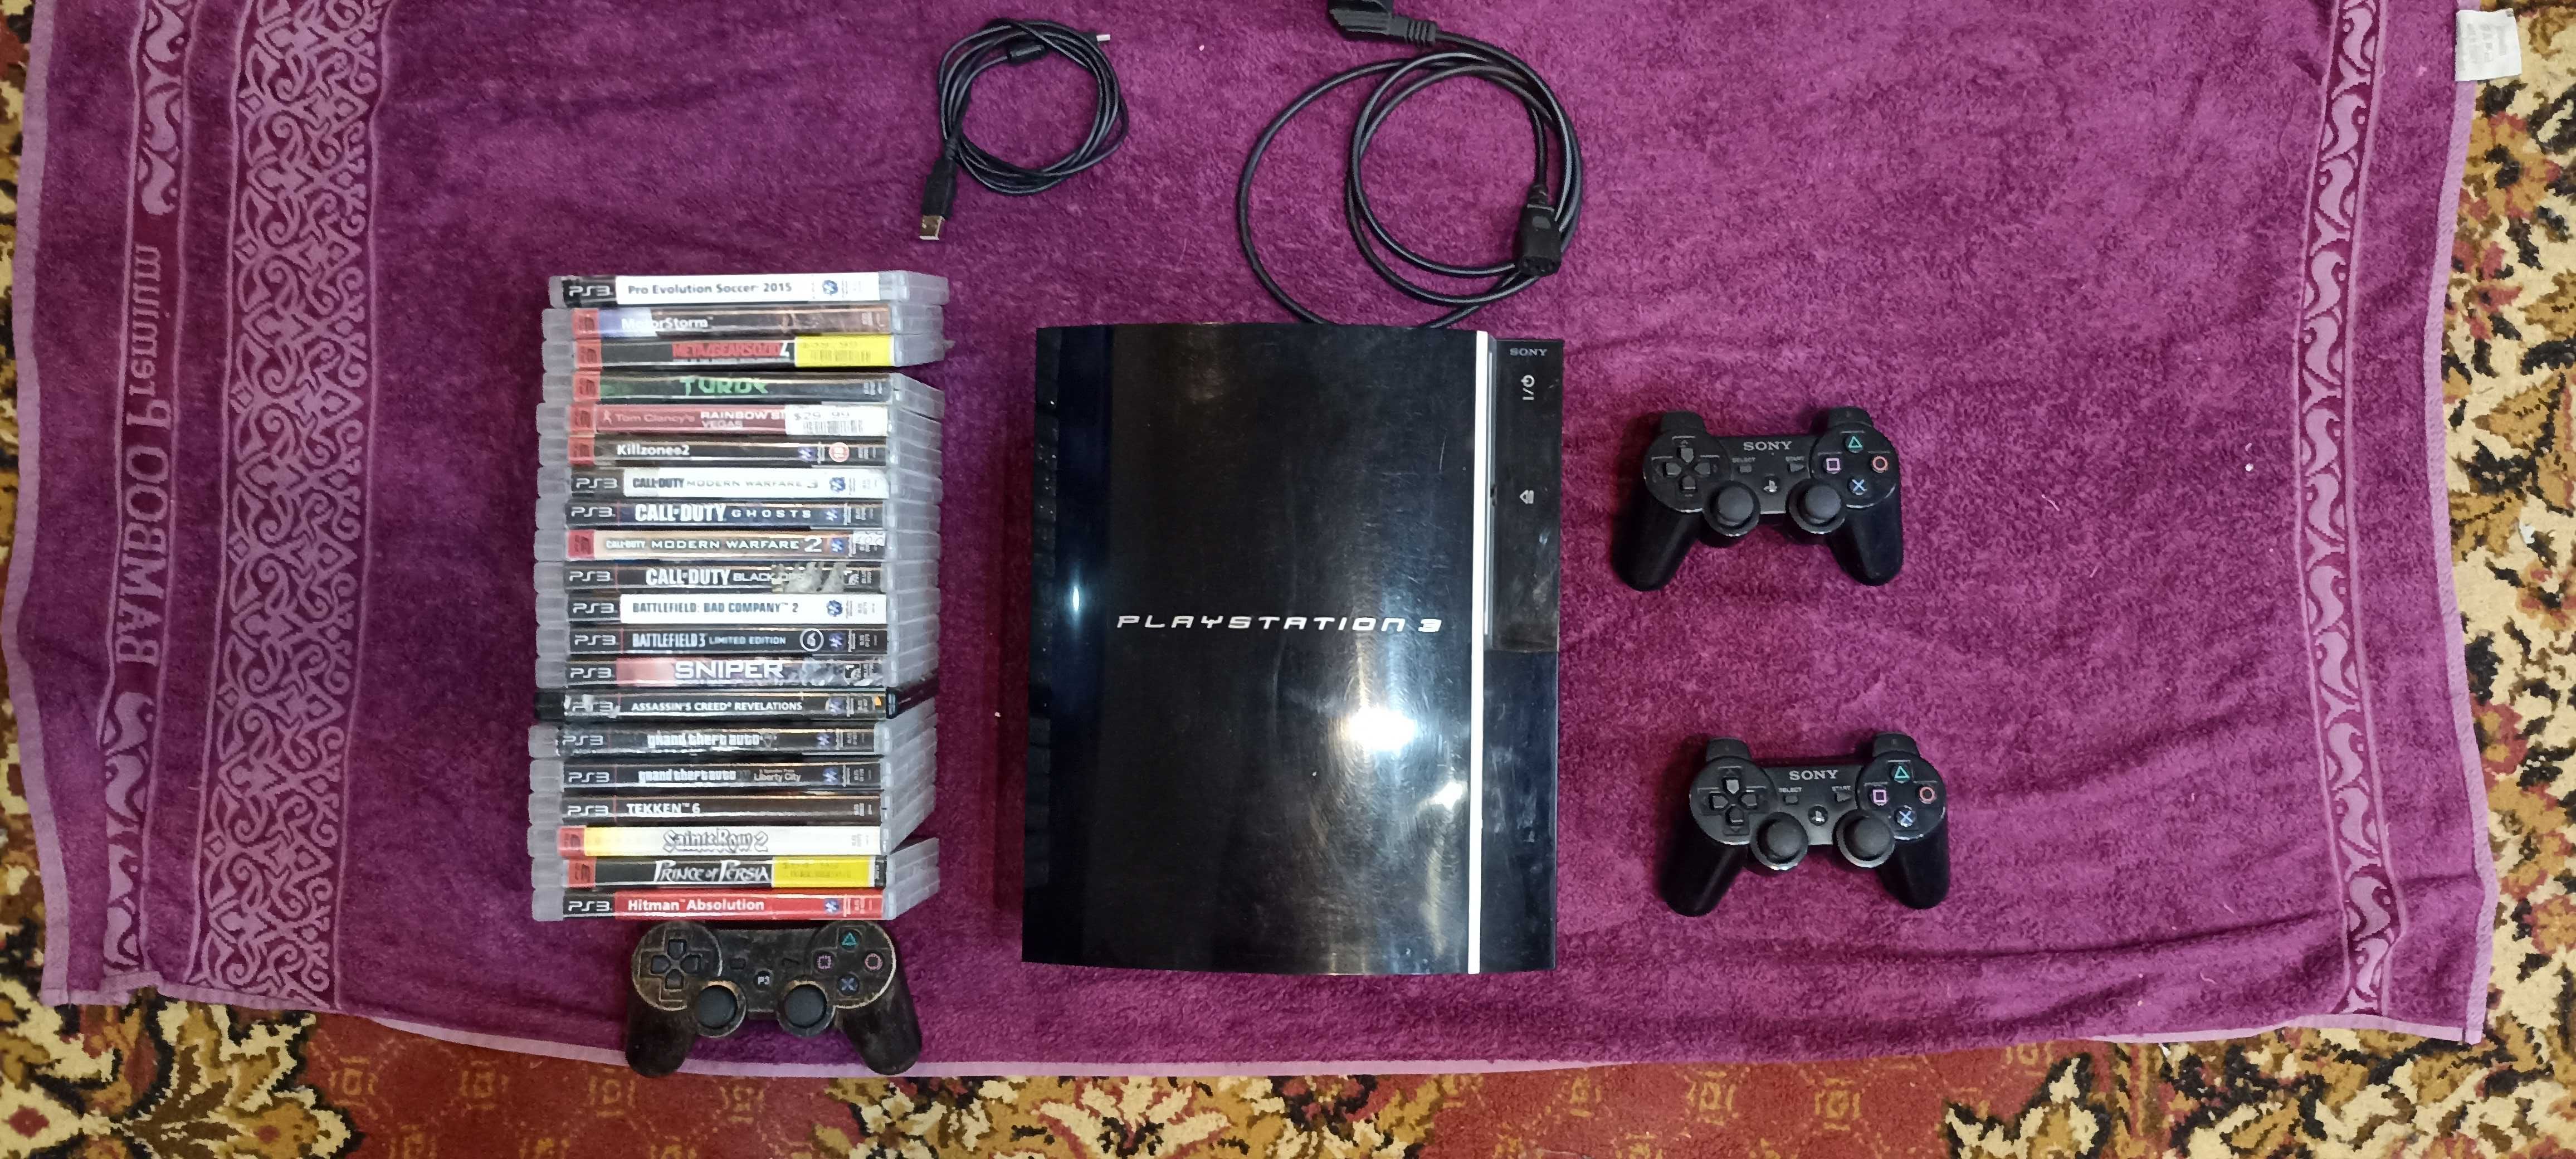 Sony Playstation ps 3